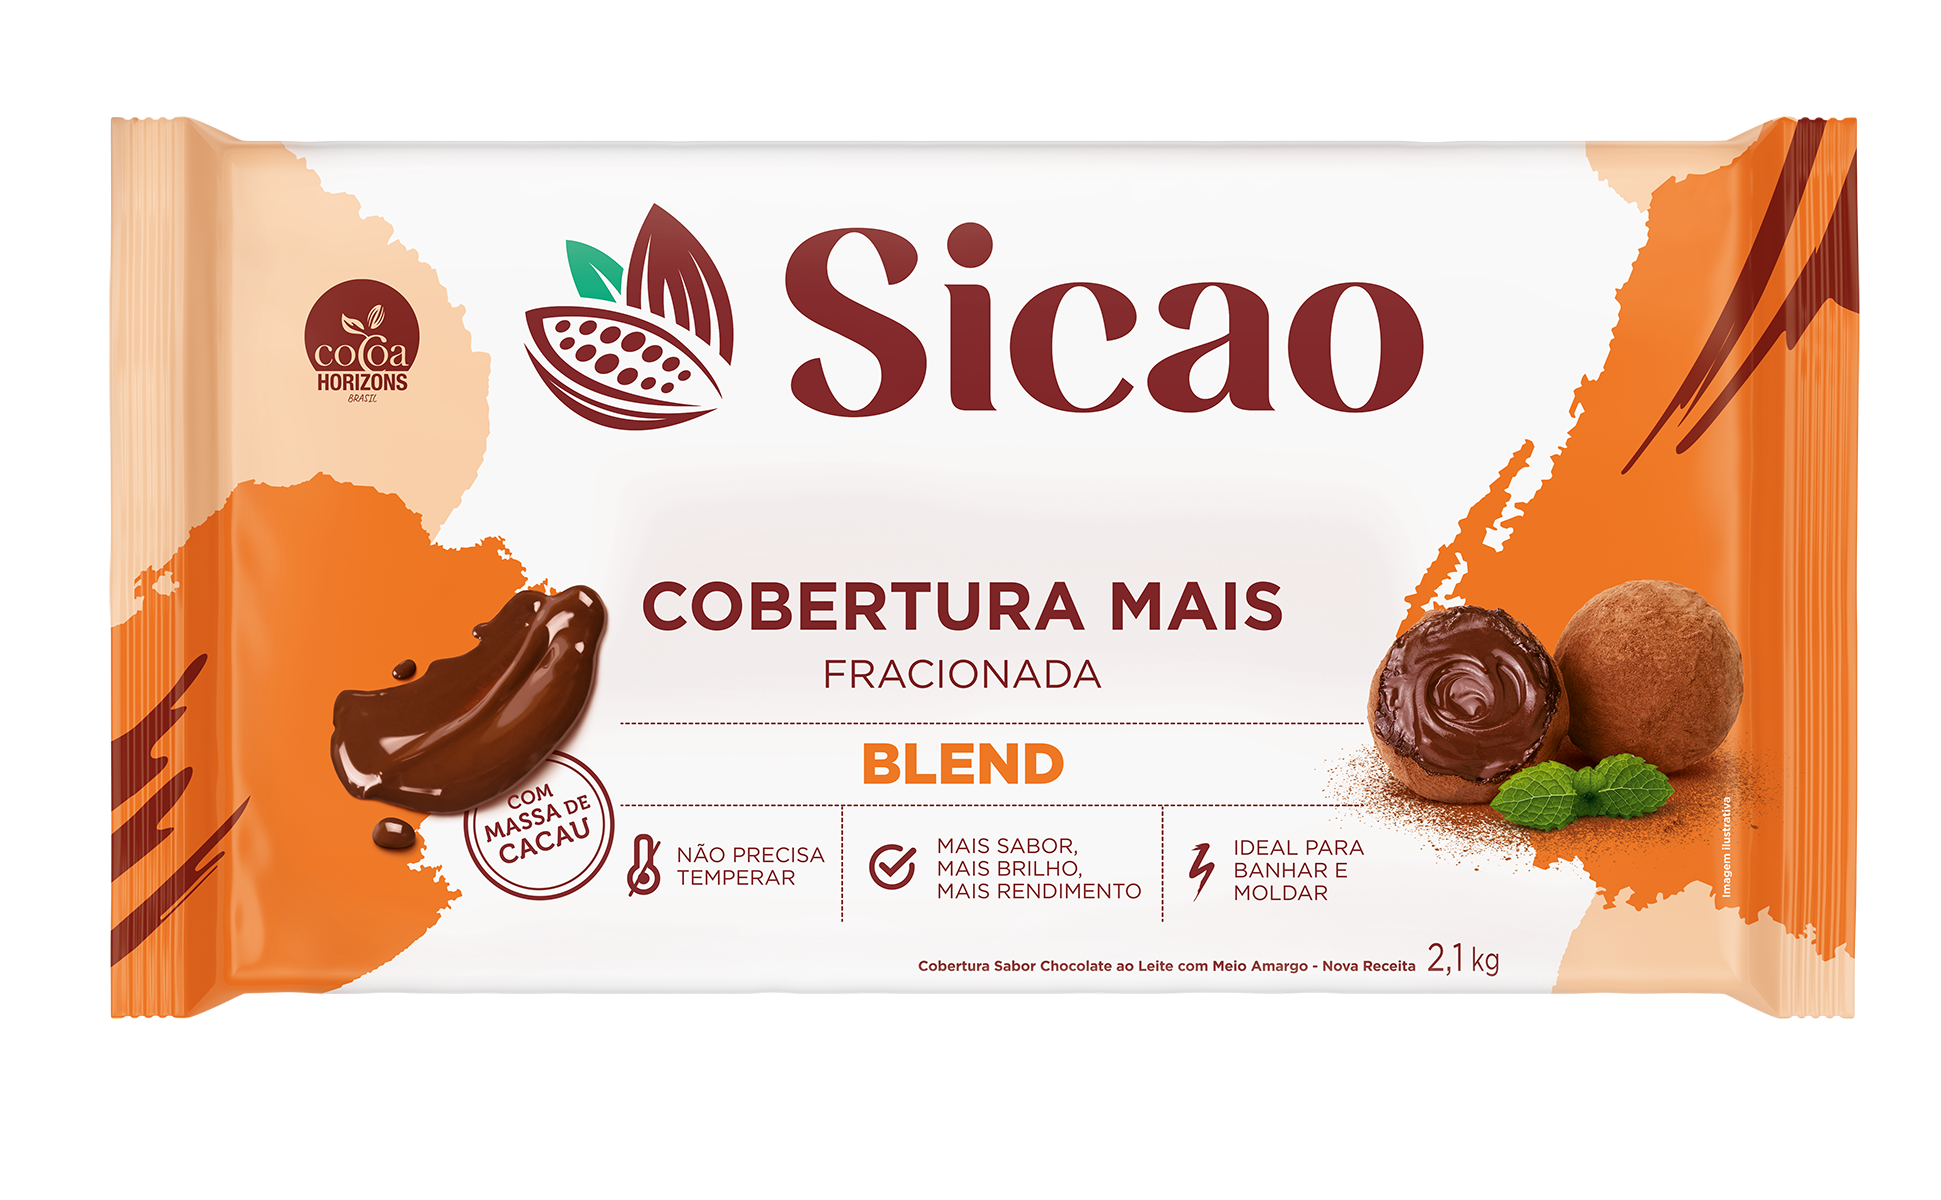 Cobertura Fracionada Sabor Chocolate Blend Sicao Mais - Barra 2,1 kg (1)